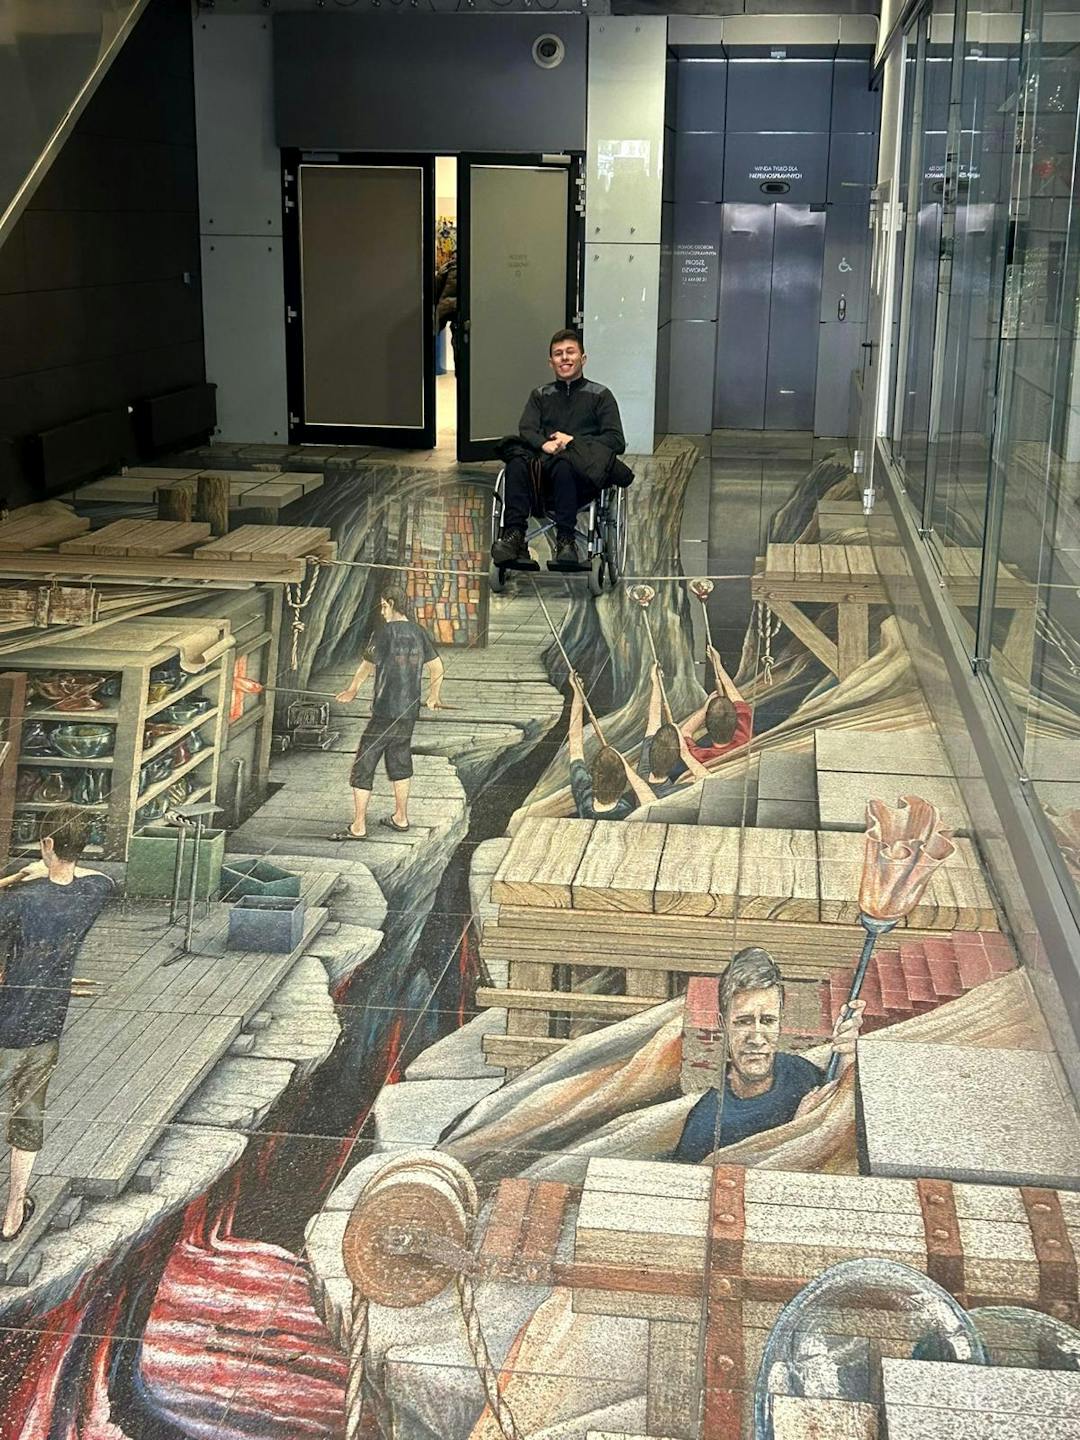 Szklane dziedzictwo Krosna | Uczeń na wózku oglada malowidła na podłodze.jpg